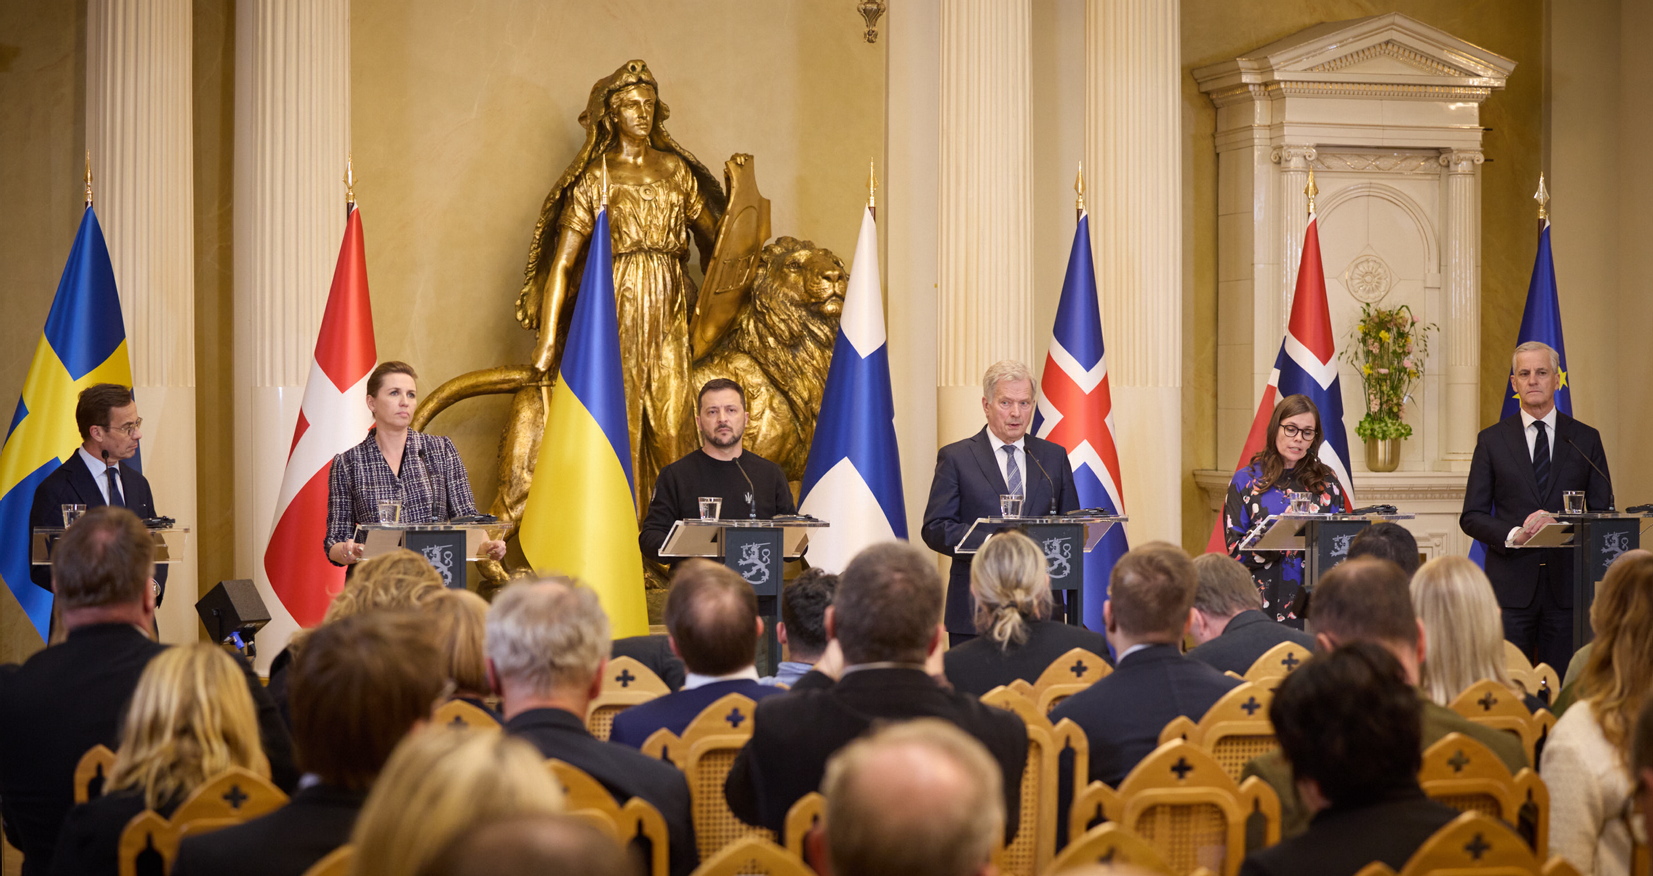 Лідери нордичних держав під час саміту підтвердили підтримку України в її прагненні стати членом ЄС та НАТО і гарантували потужну безпекову та цивільну допомогу. Фото з сайту president.gov.ua